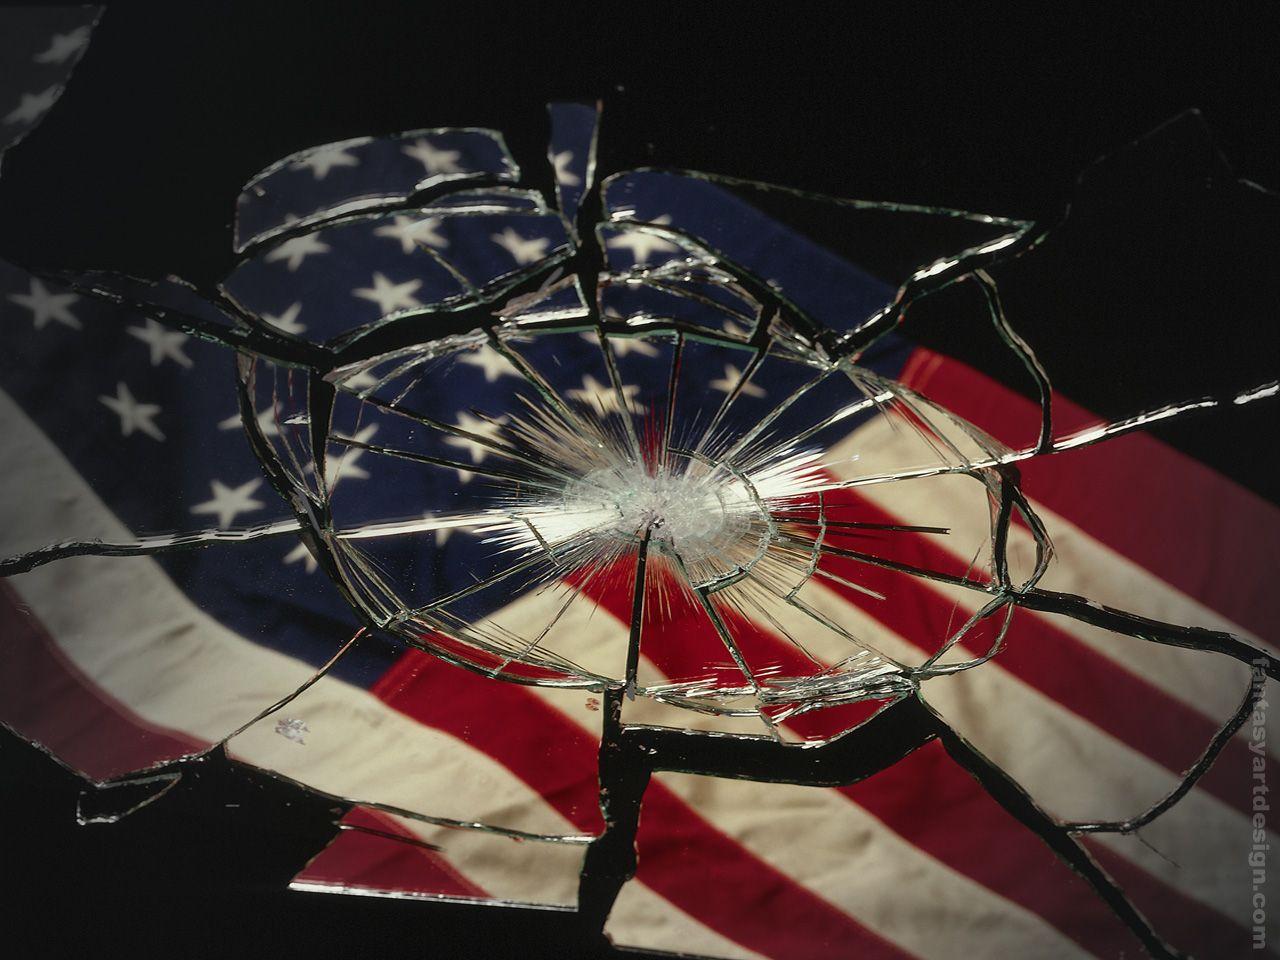 1280x960 hình nền lá cờ Mỹ bị vỡ kính bởi Patriot, Thao tác ảnh